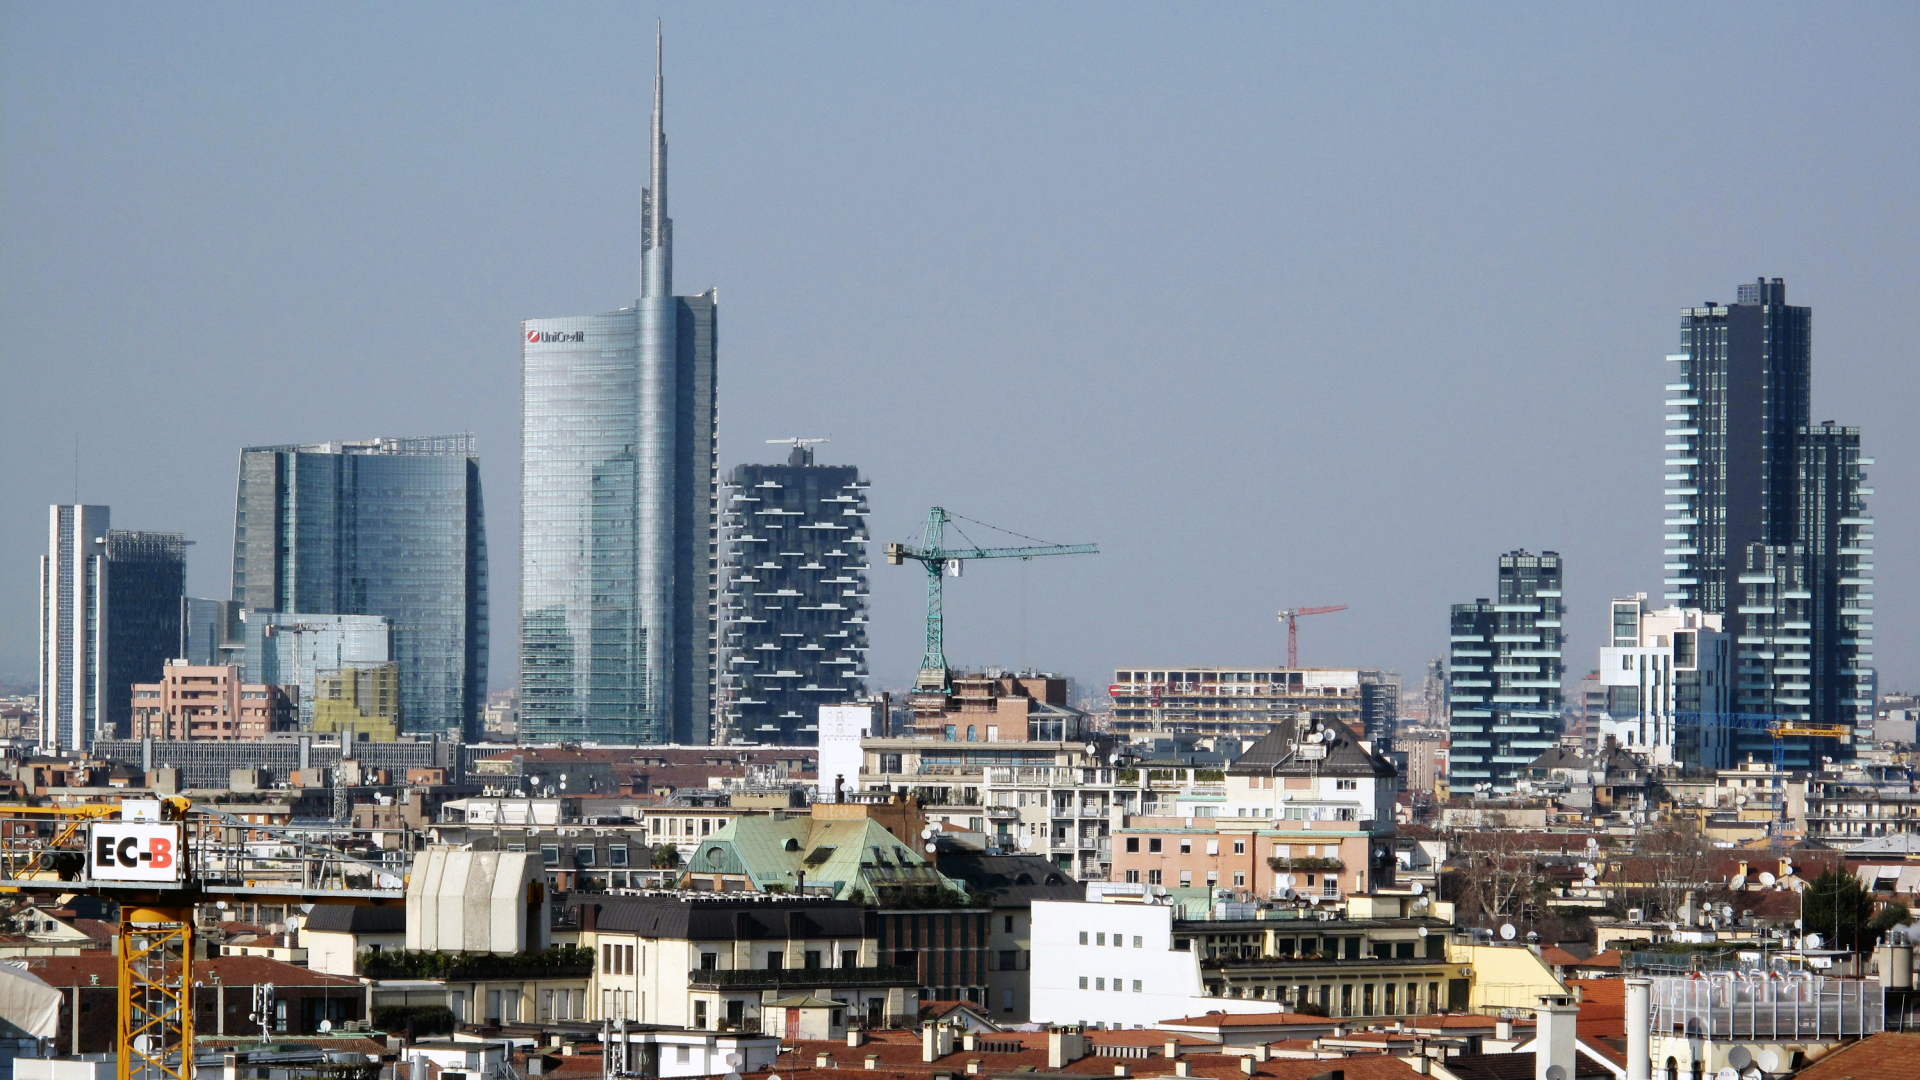 Blick auf Mailand - im höchsten Haus auf der linken Bildseite ist Unicredit untergebracht.